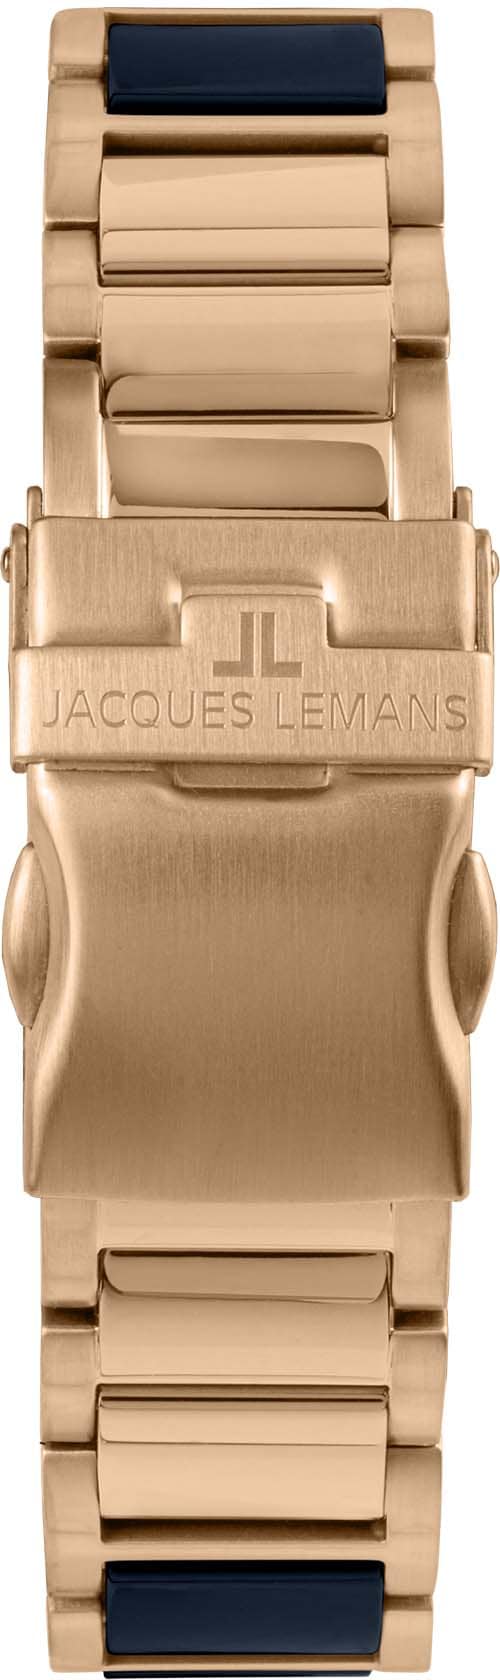 Jacques Lemans Keramikuhr »Liverpool, 42-12H«, Quarzuhr, Amrbanduhr, Damenuhr, Datum